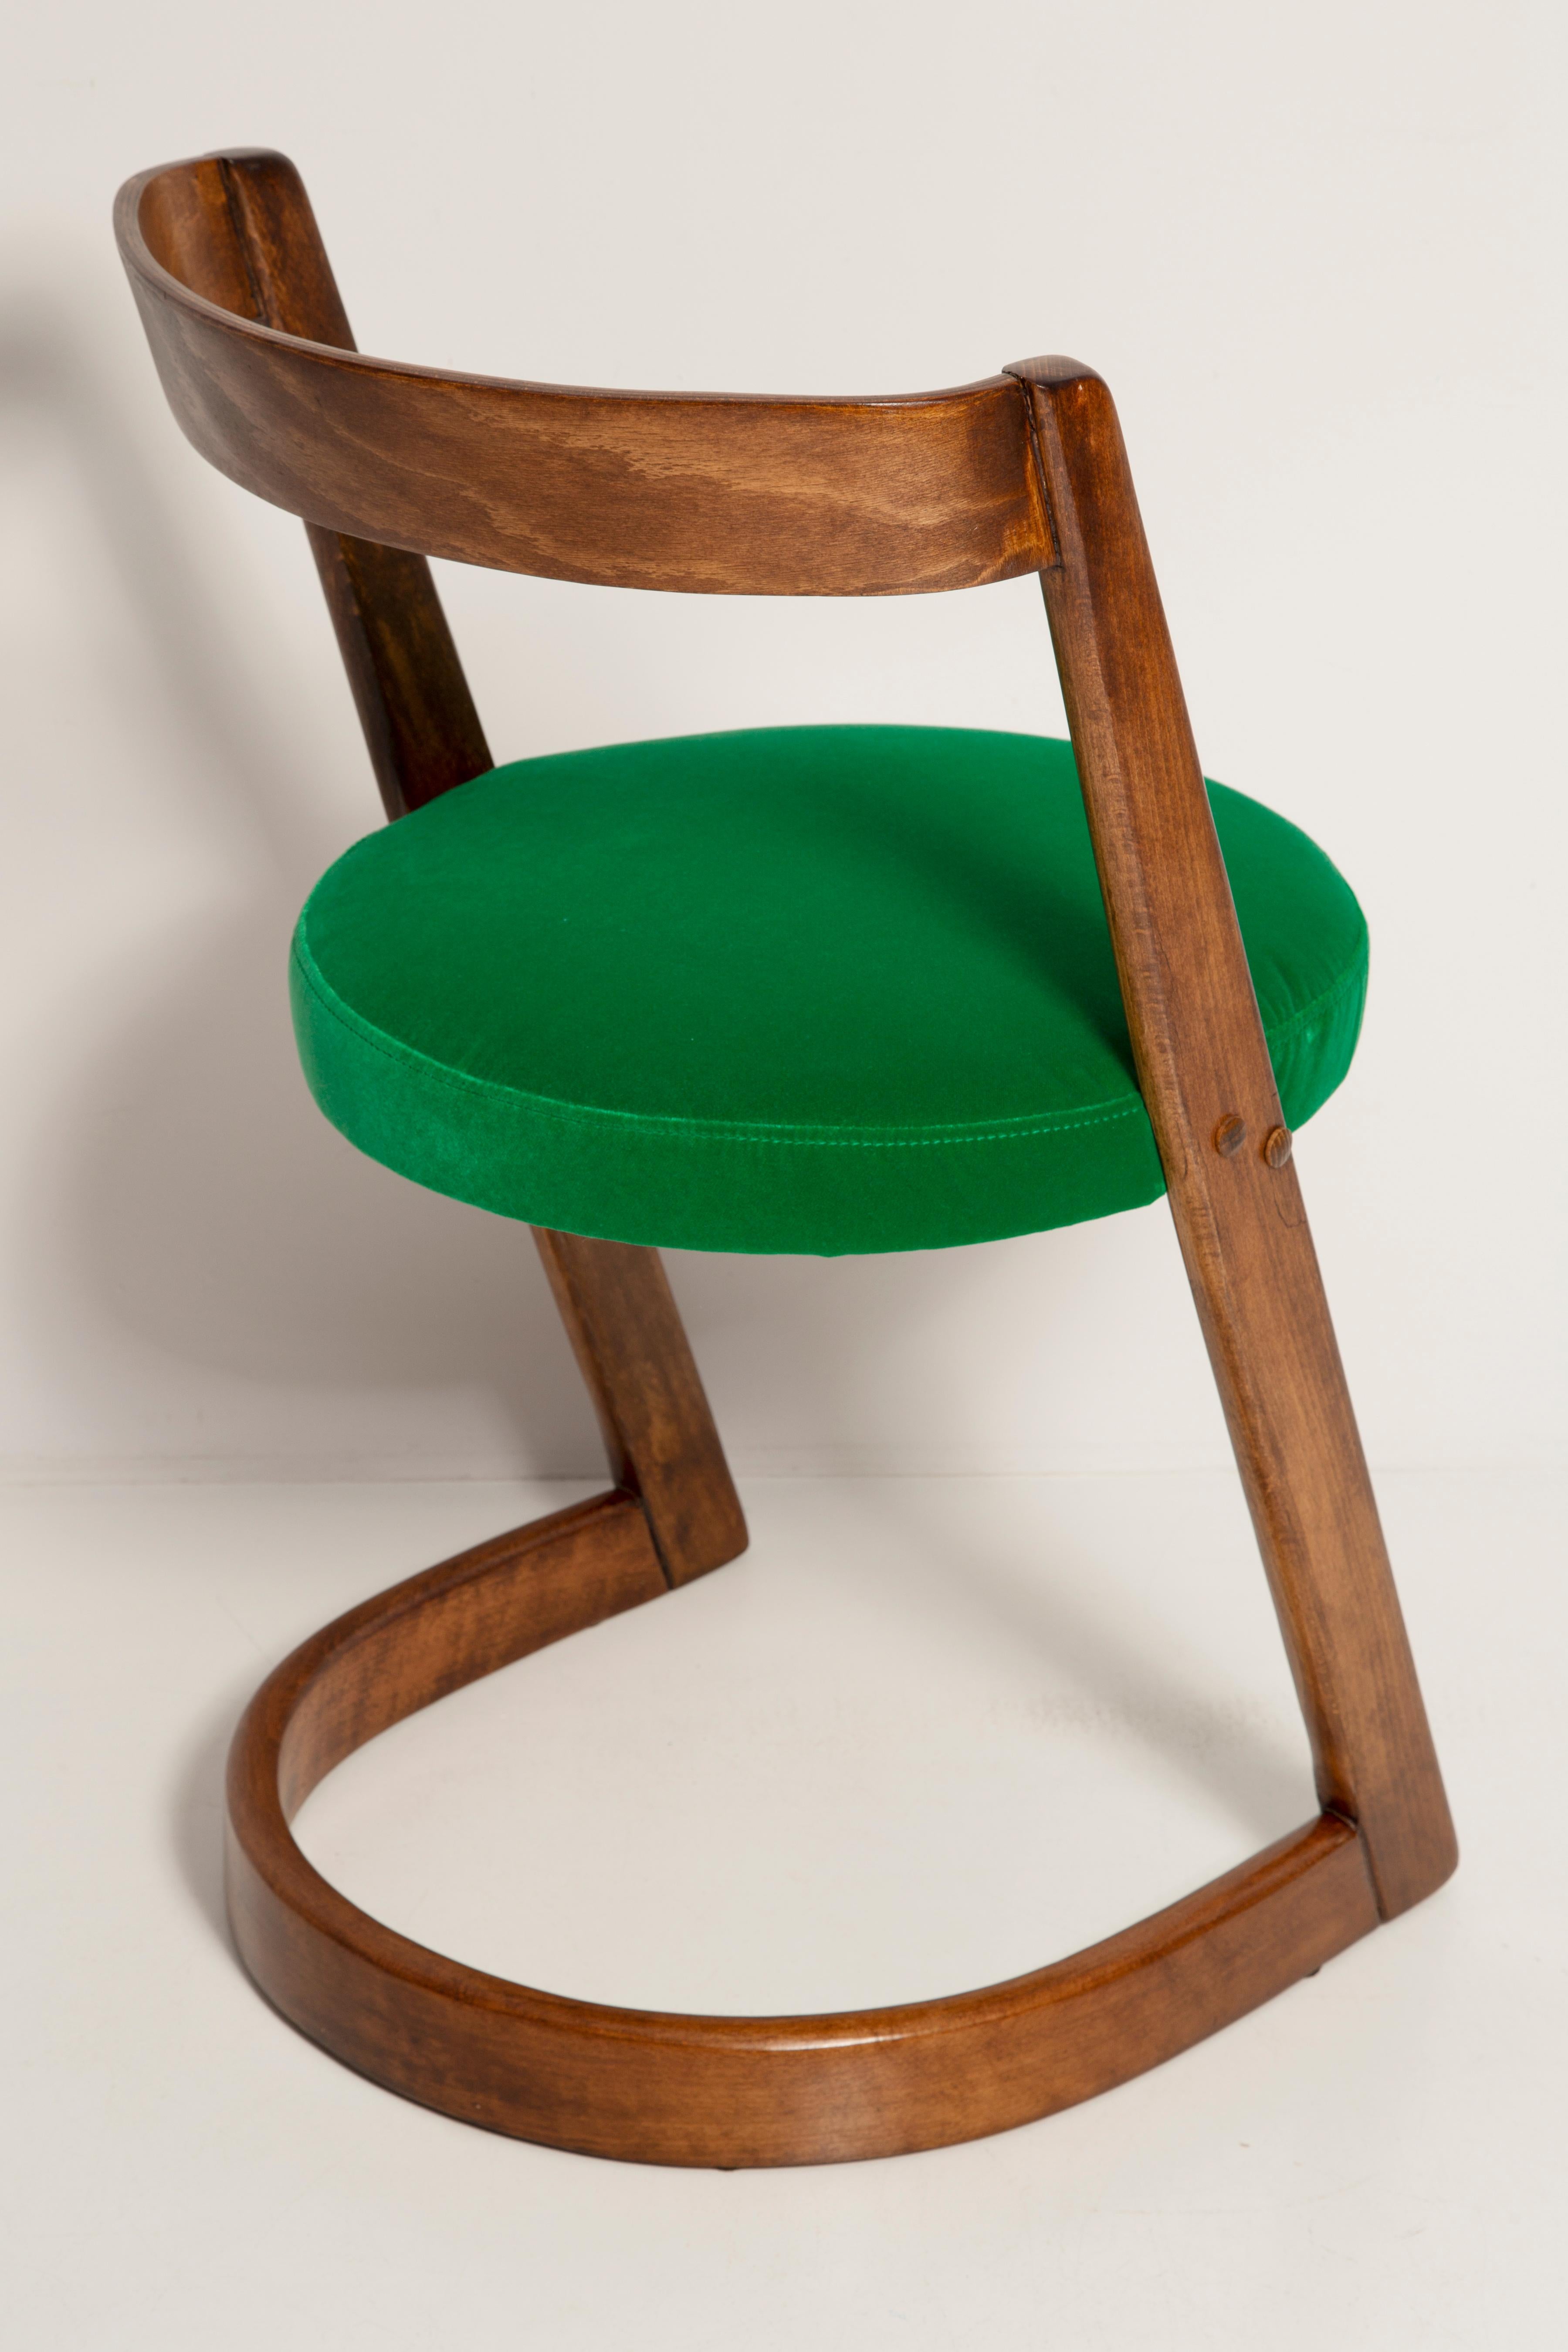 French Midcentury Green Velvet Halfa Chair, Baumann, France, 1970s For Sale